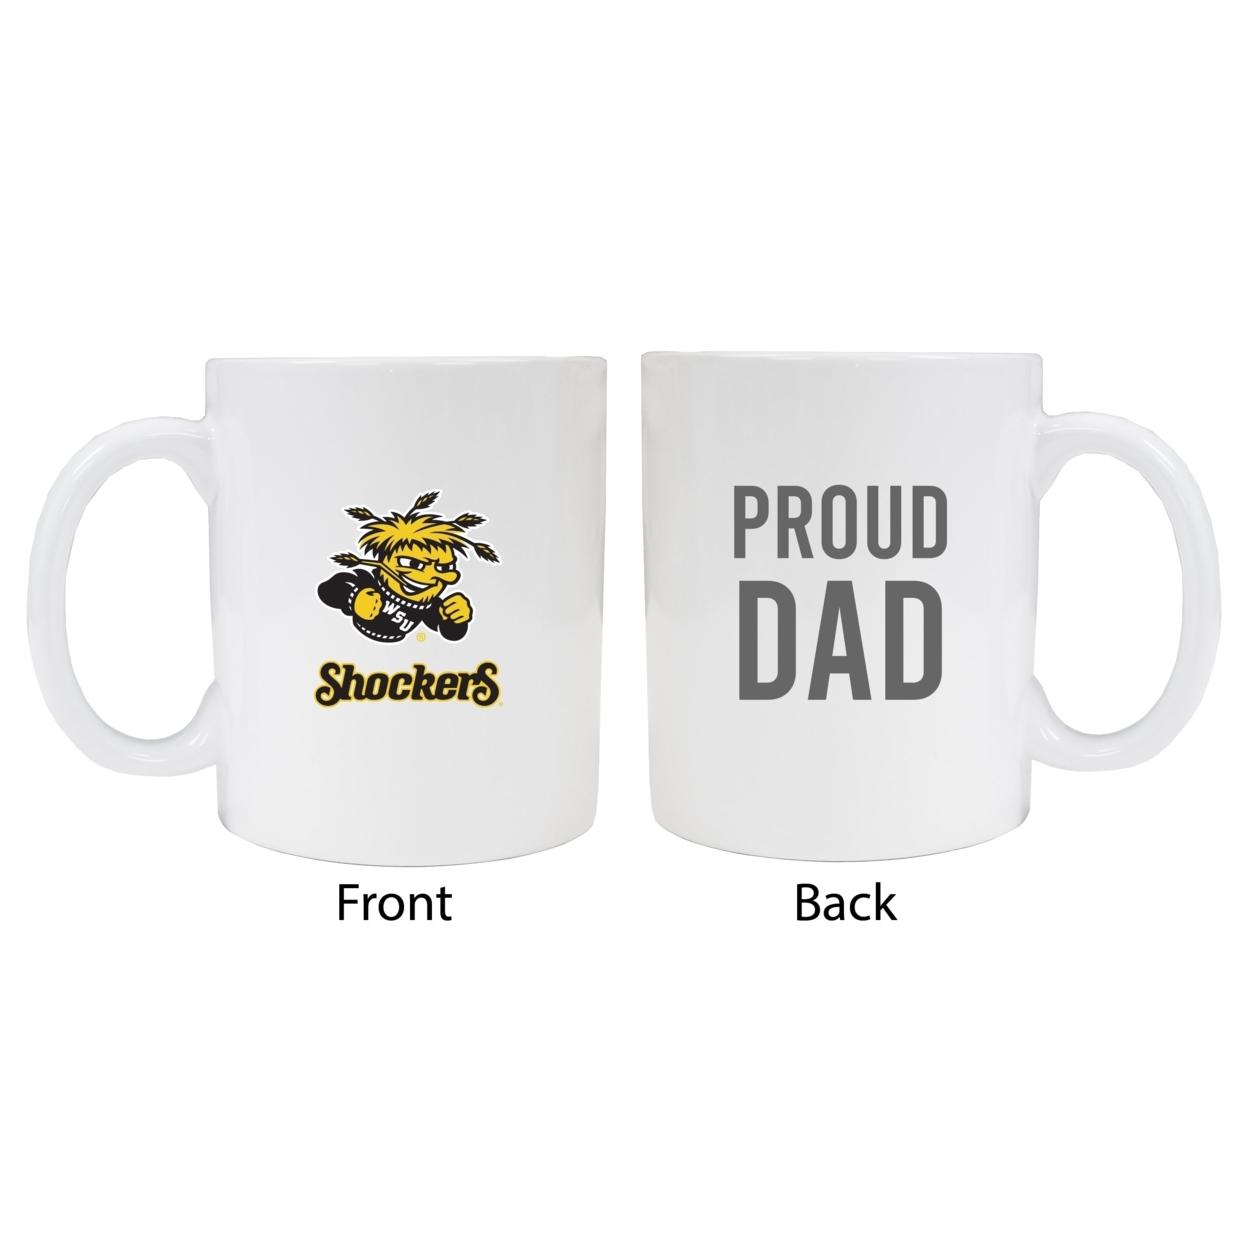 Wichita State Shockers Proud Dad Ceramic Coffee Mug - White